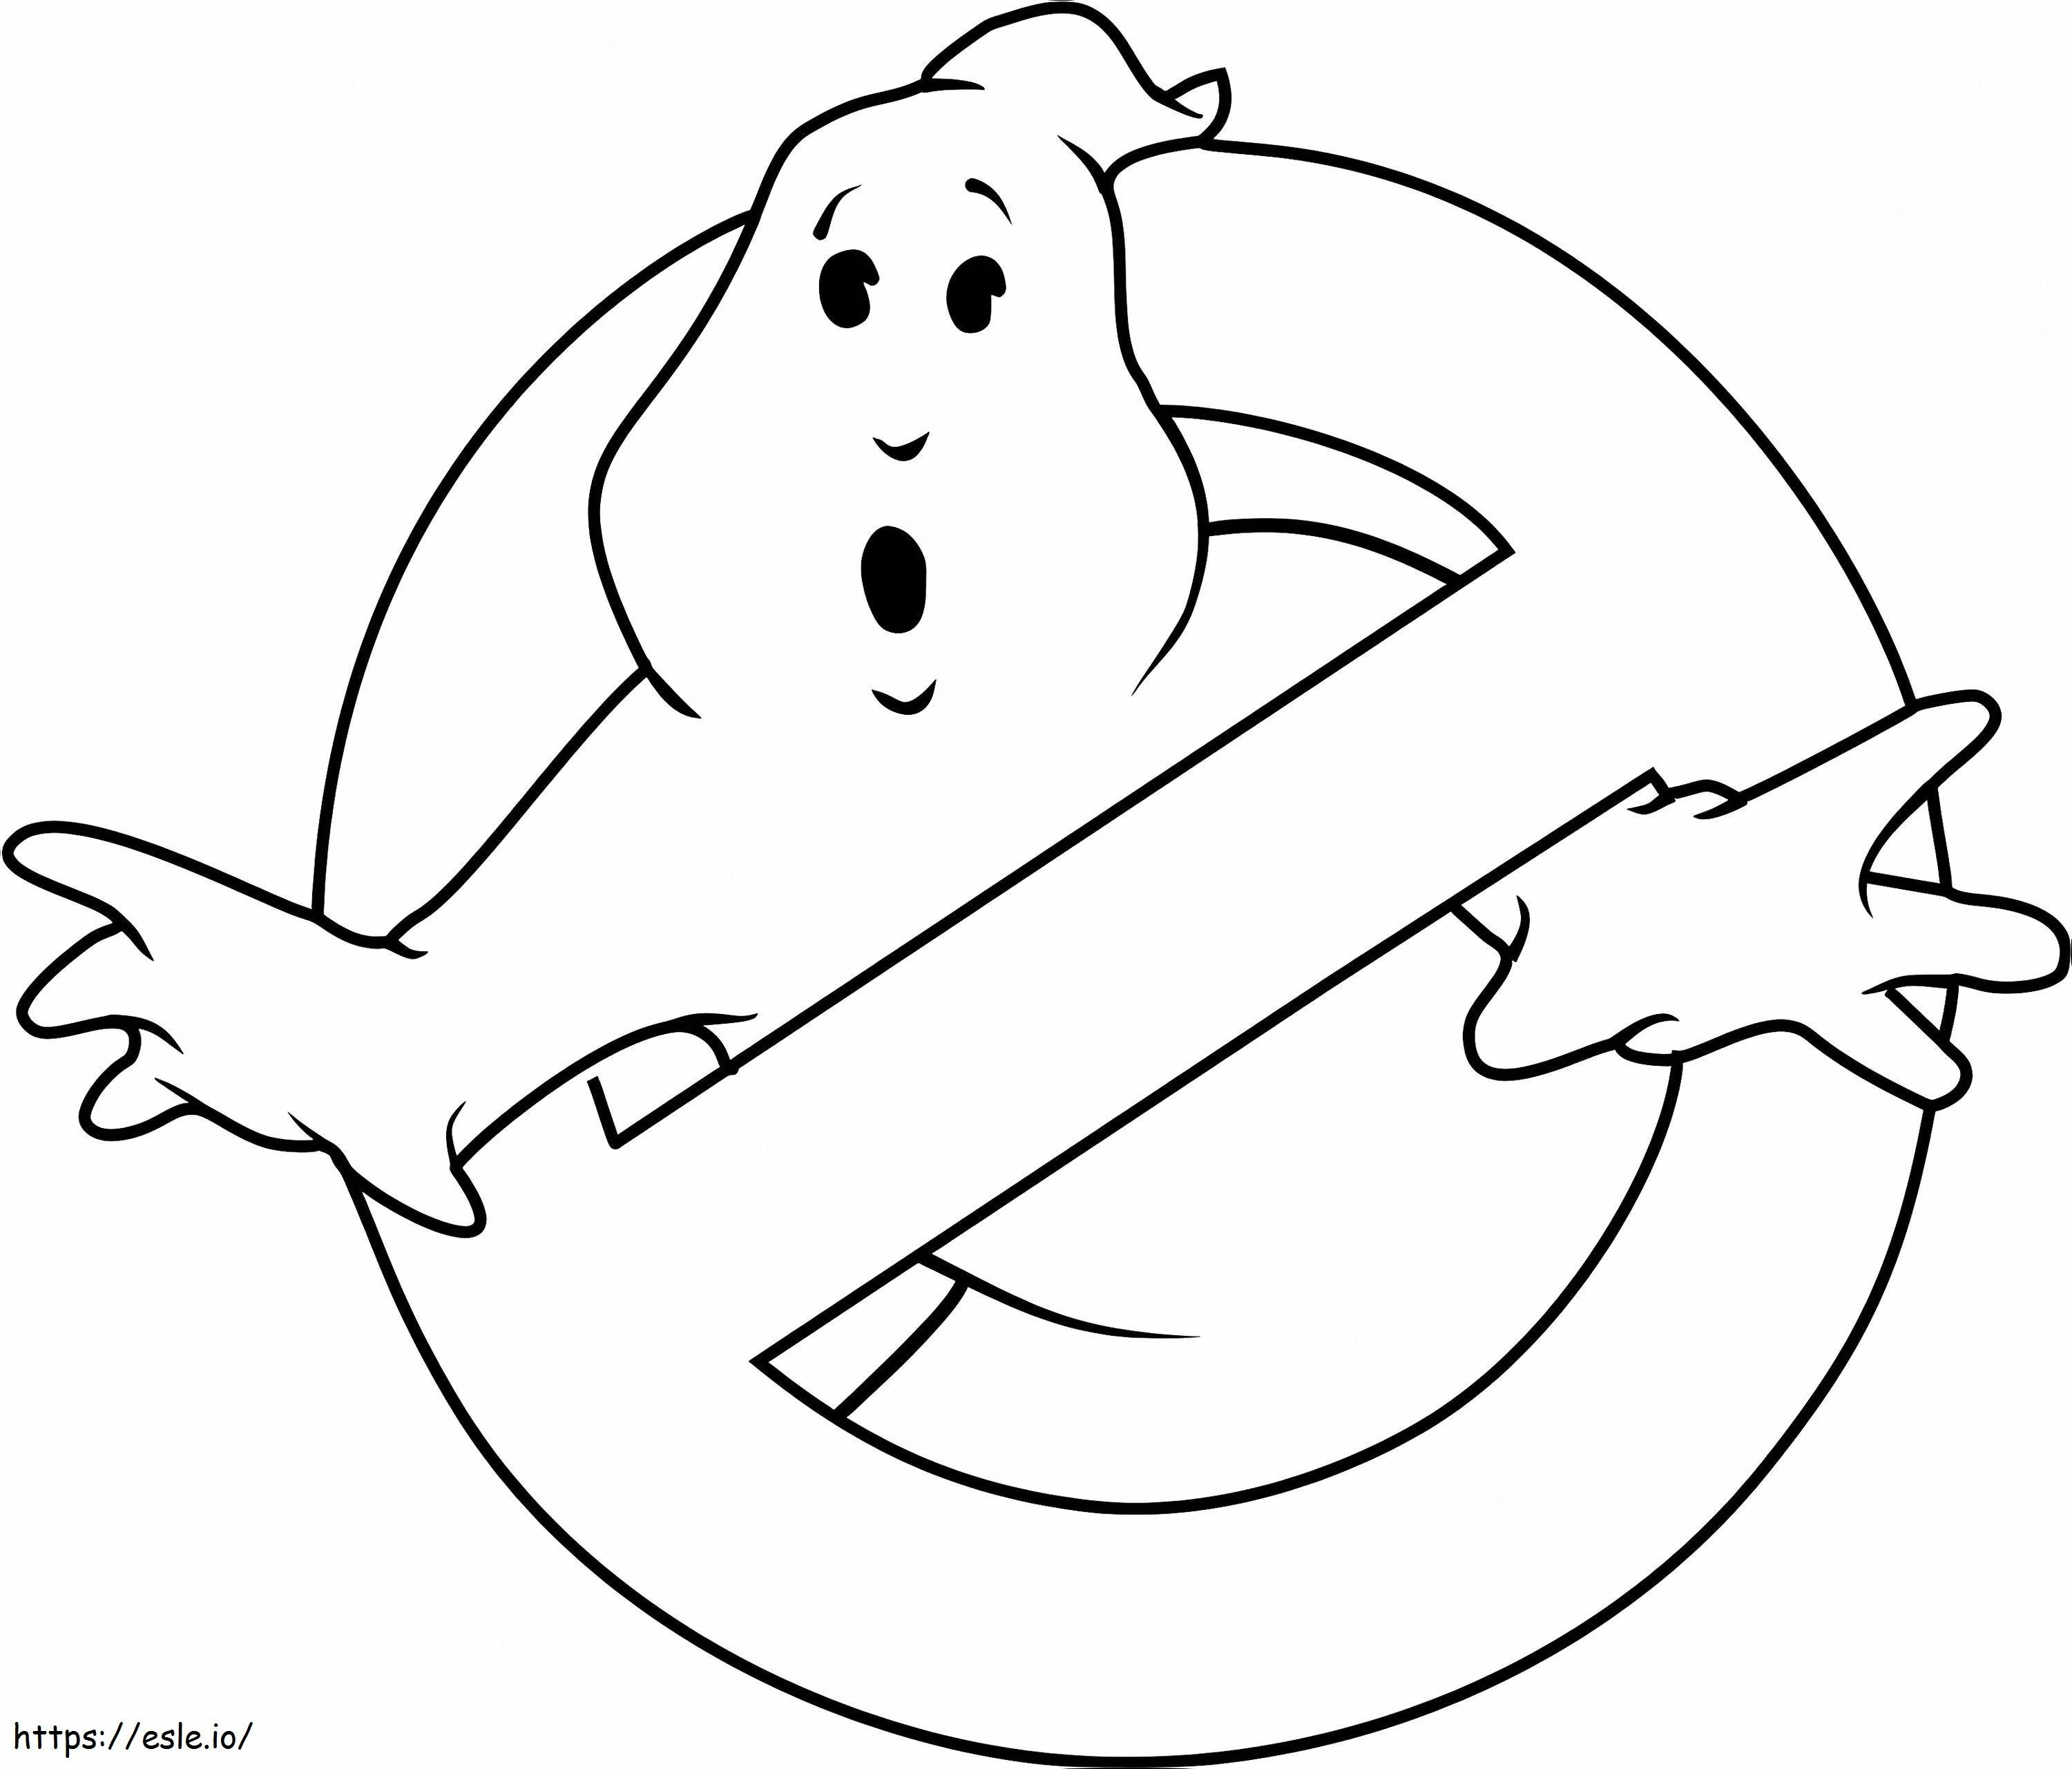 1532145428-logo van Ghostbusters A4 kleurplaat kleurplaat